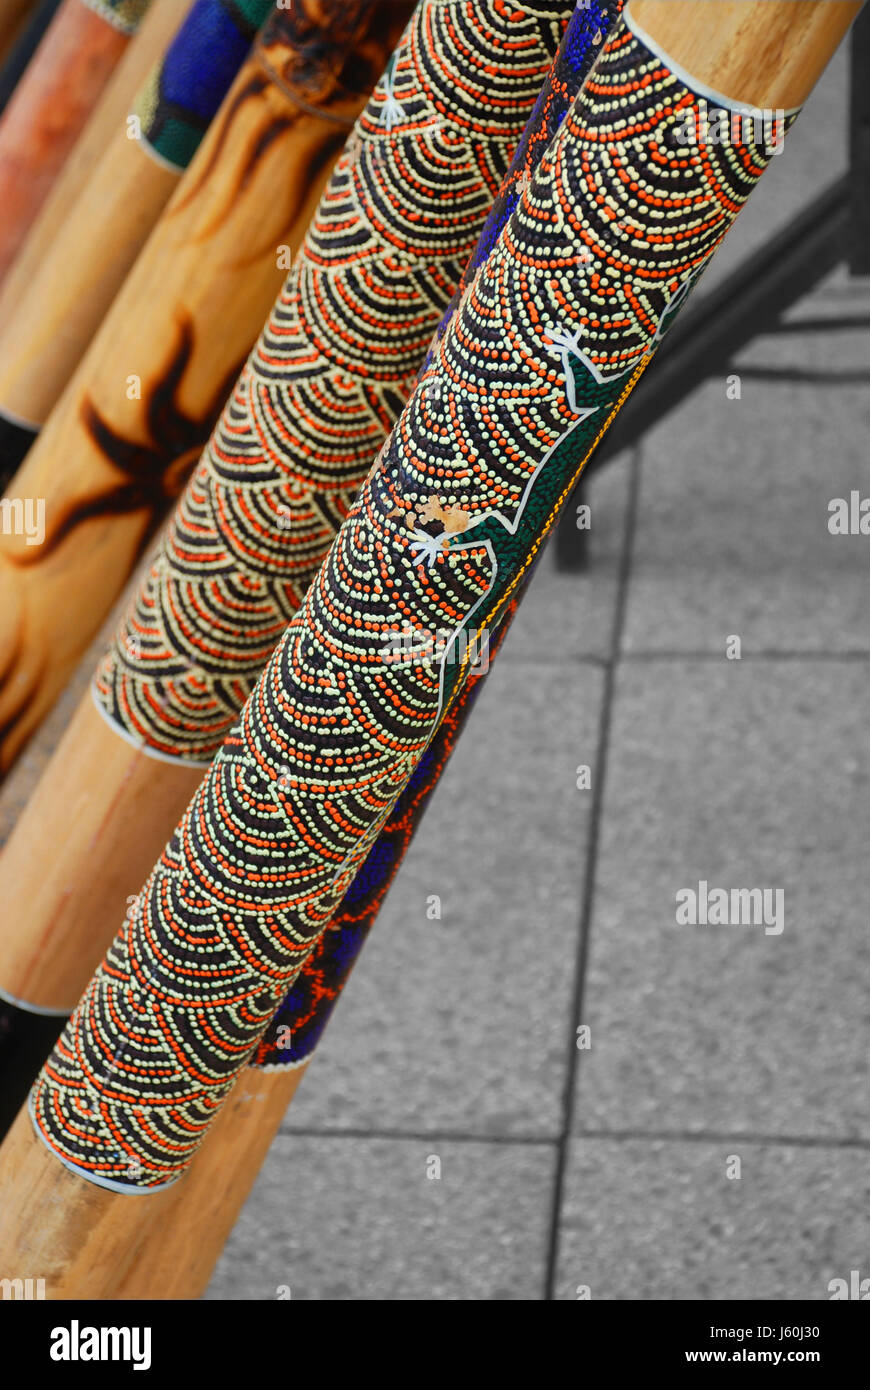 Encore de la musique australienne aborigène instrument mesure de placement méthode Banque D'Images